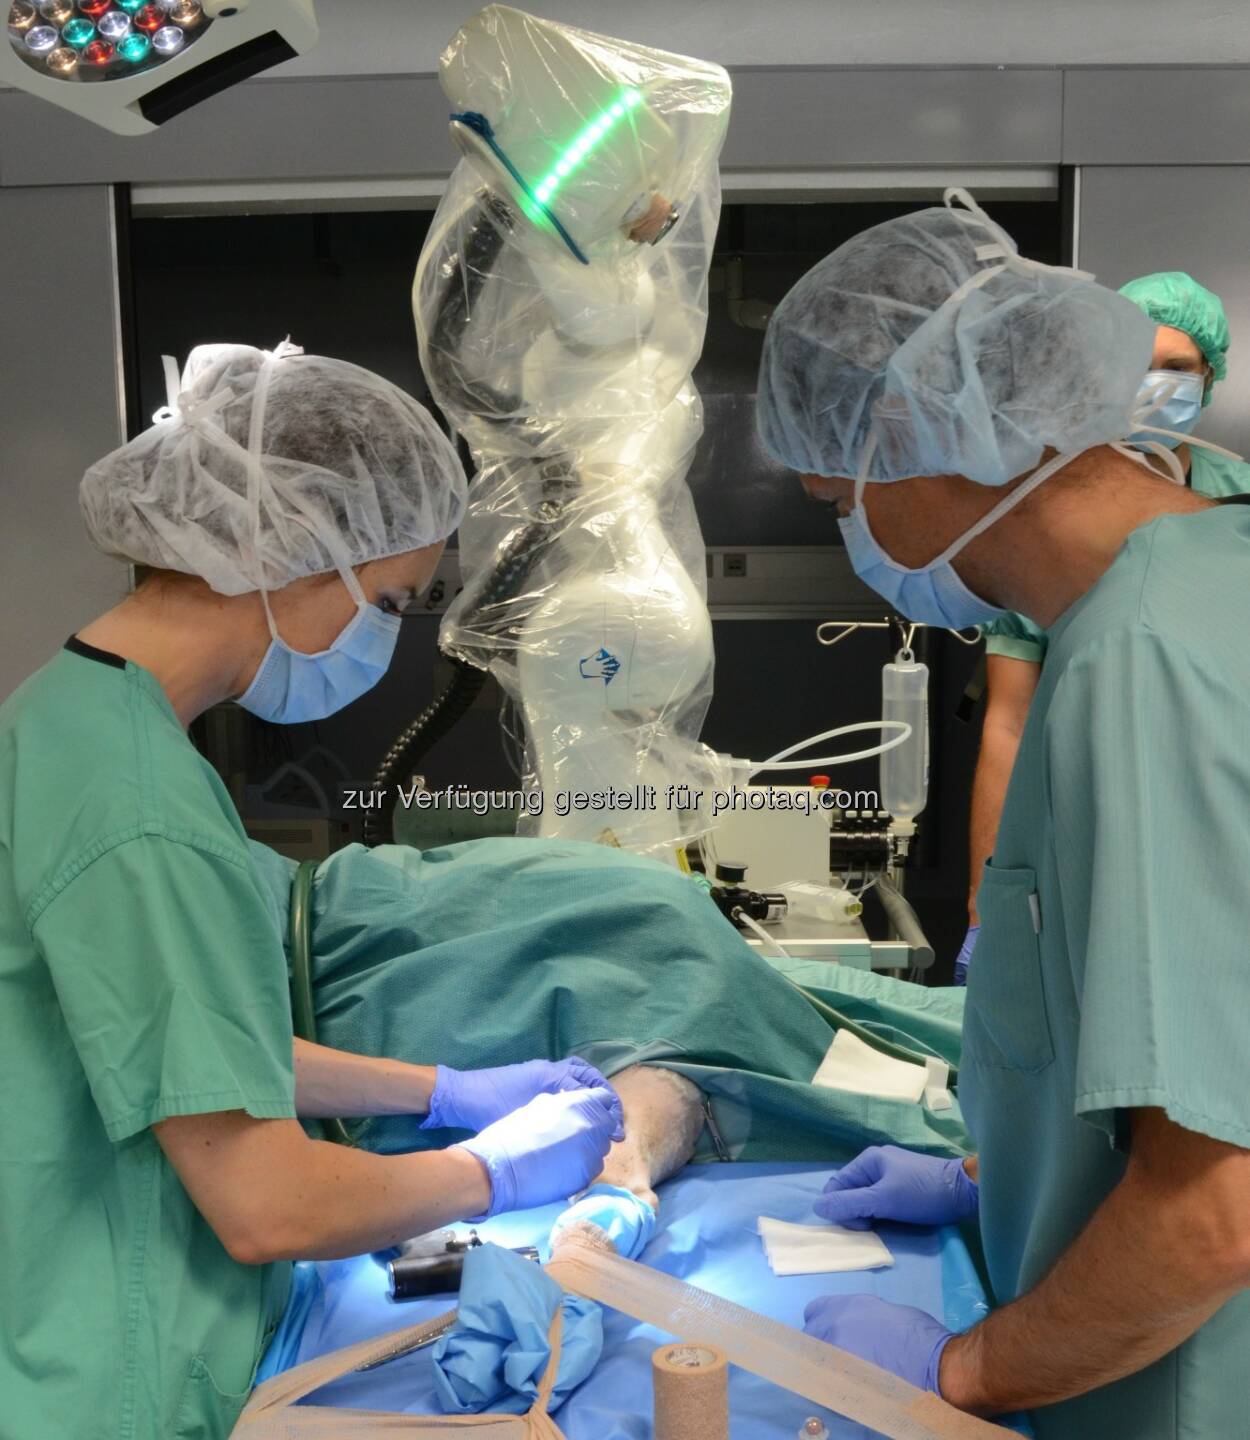 CARLO[TM]-System der Schweizer AOT (Lasersystem für die Knochenchirurgie) : Aesculap AG beteiligt sich an Laserchirurgie-Unternehmen Advanced Osteotomy Tools AG (AOT) : Fotocredit: B. Braun Melsungen AG